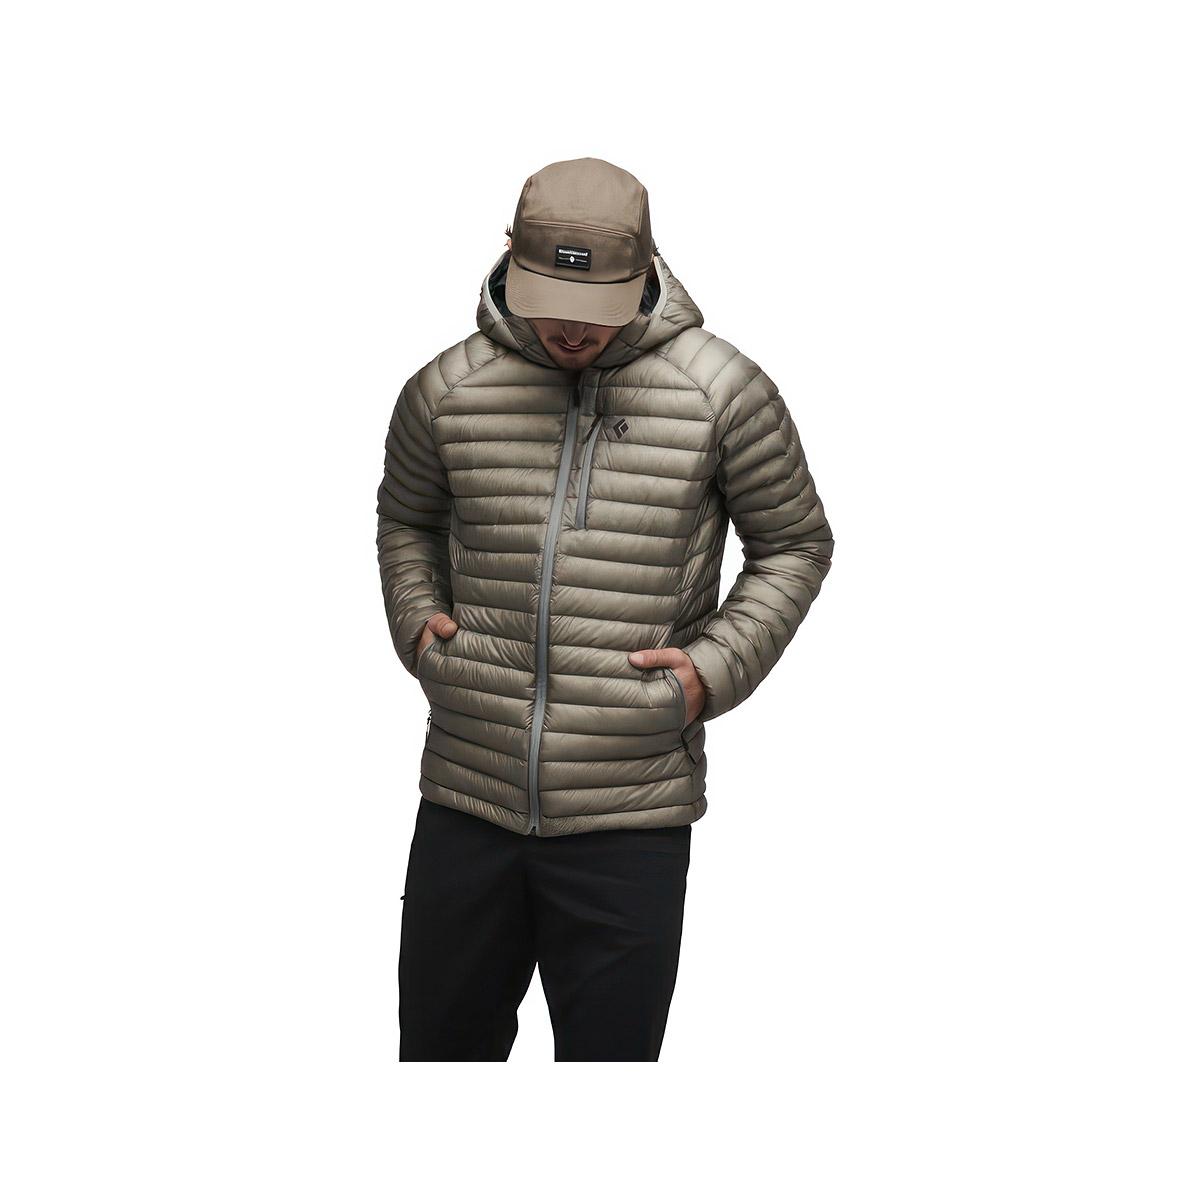 Men's Cotton Fleece Full Zip Hooded Sweatshirt - All In Motion™ Brown L